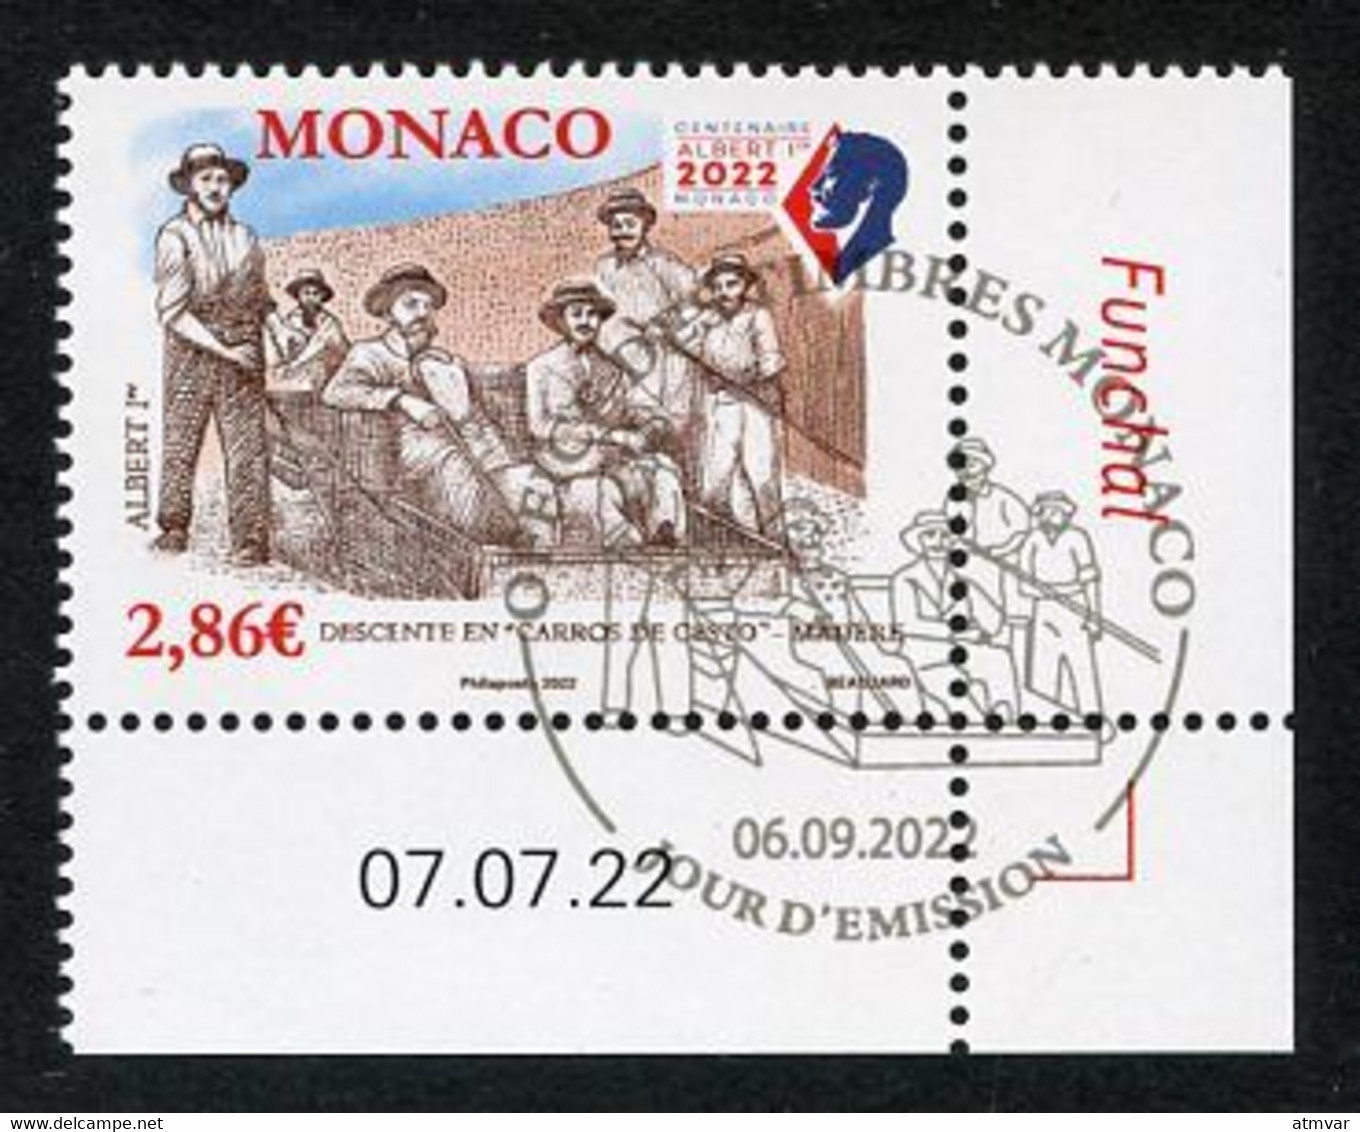 MONACO (2022) Albert 1er Madère Madeira Funchal, Descente En Carros De Cesto - Coin Daté - Used Stamps